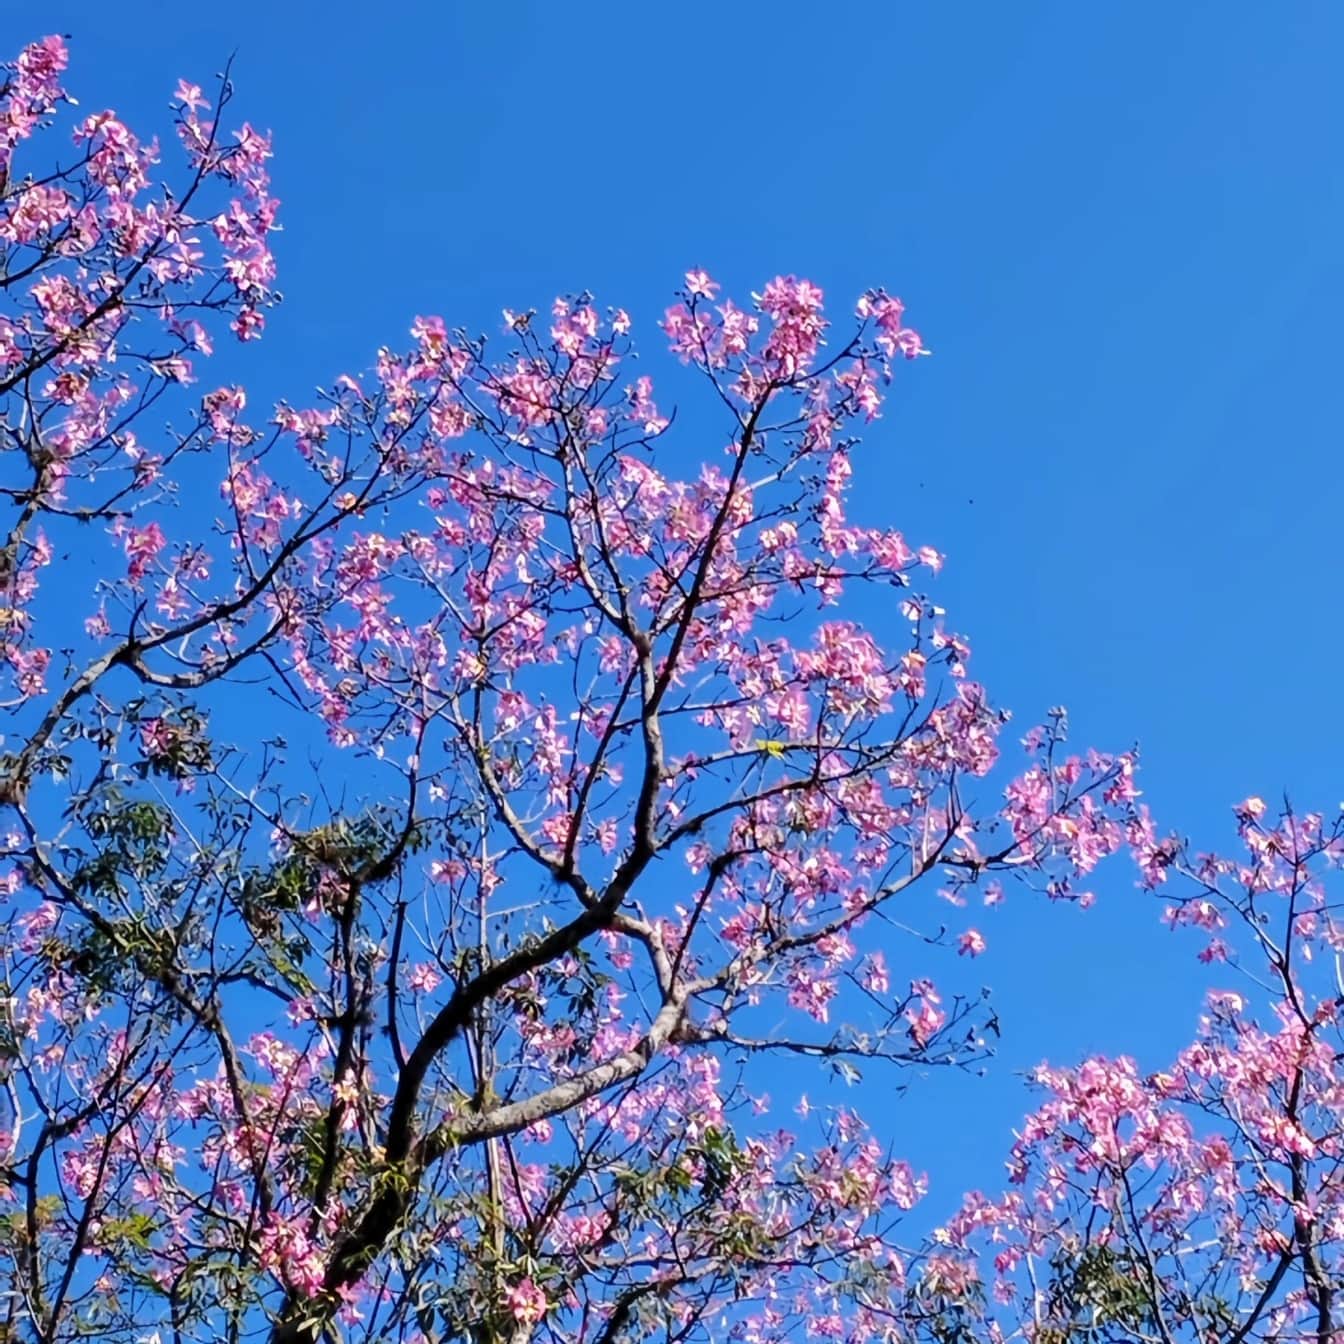 ต้นไม้ที่มีดอกสีชมพูในฤดูใบไม้ผลิ